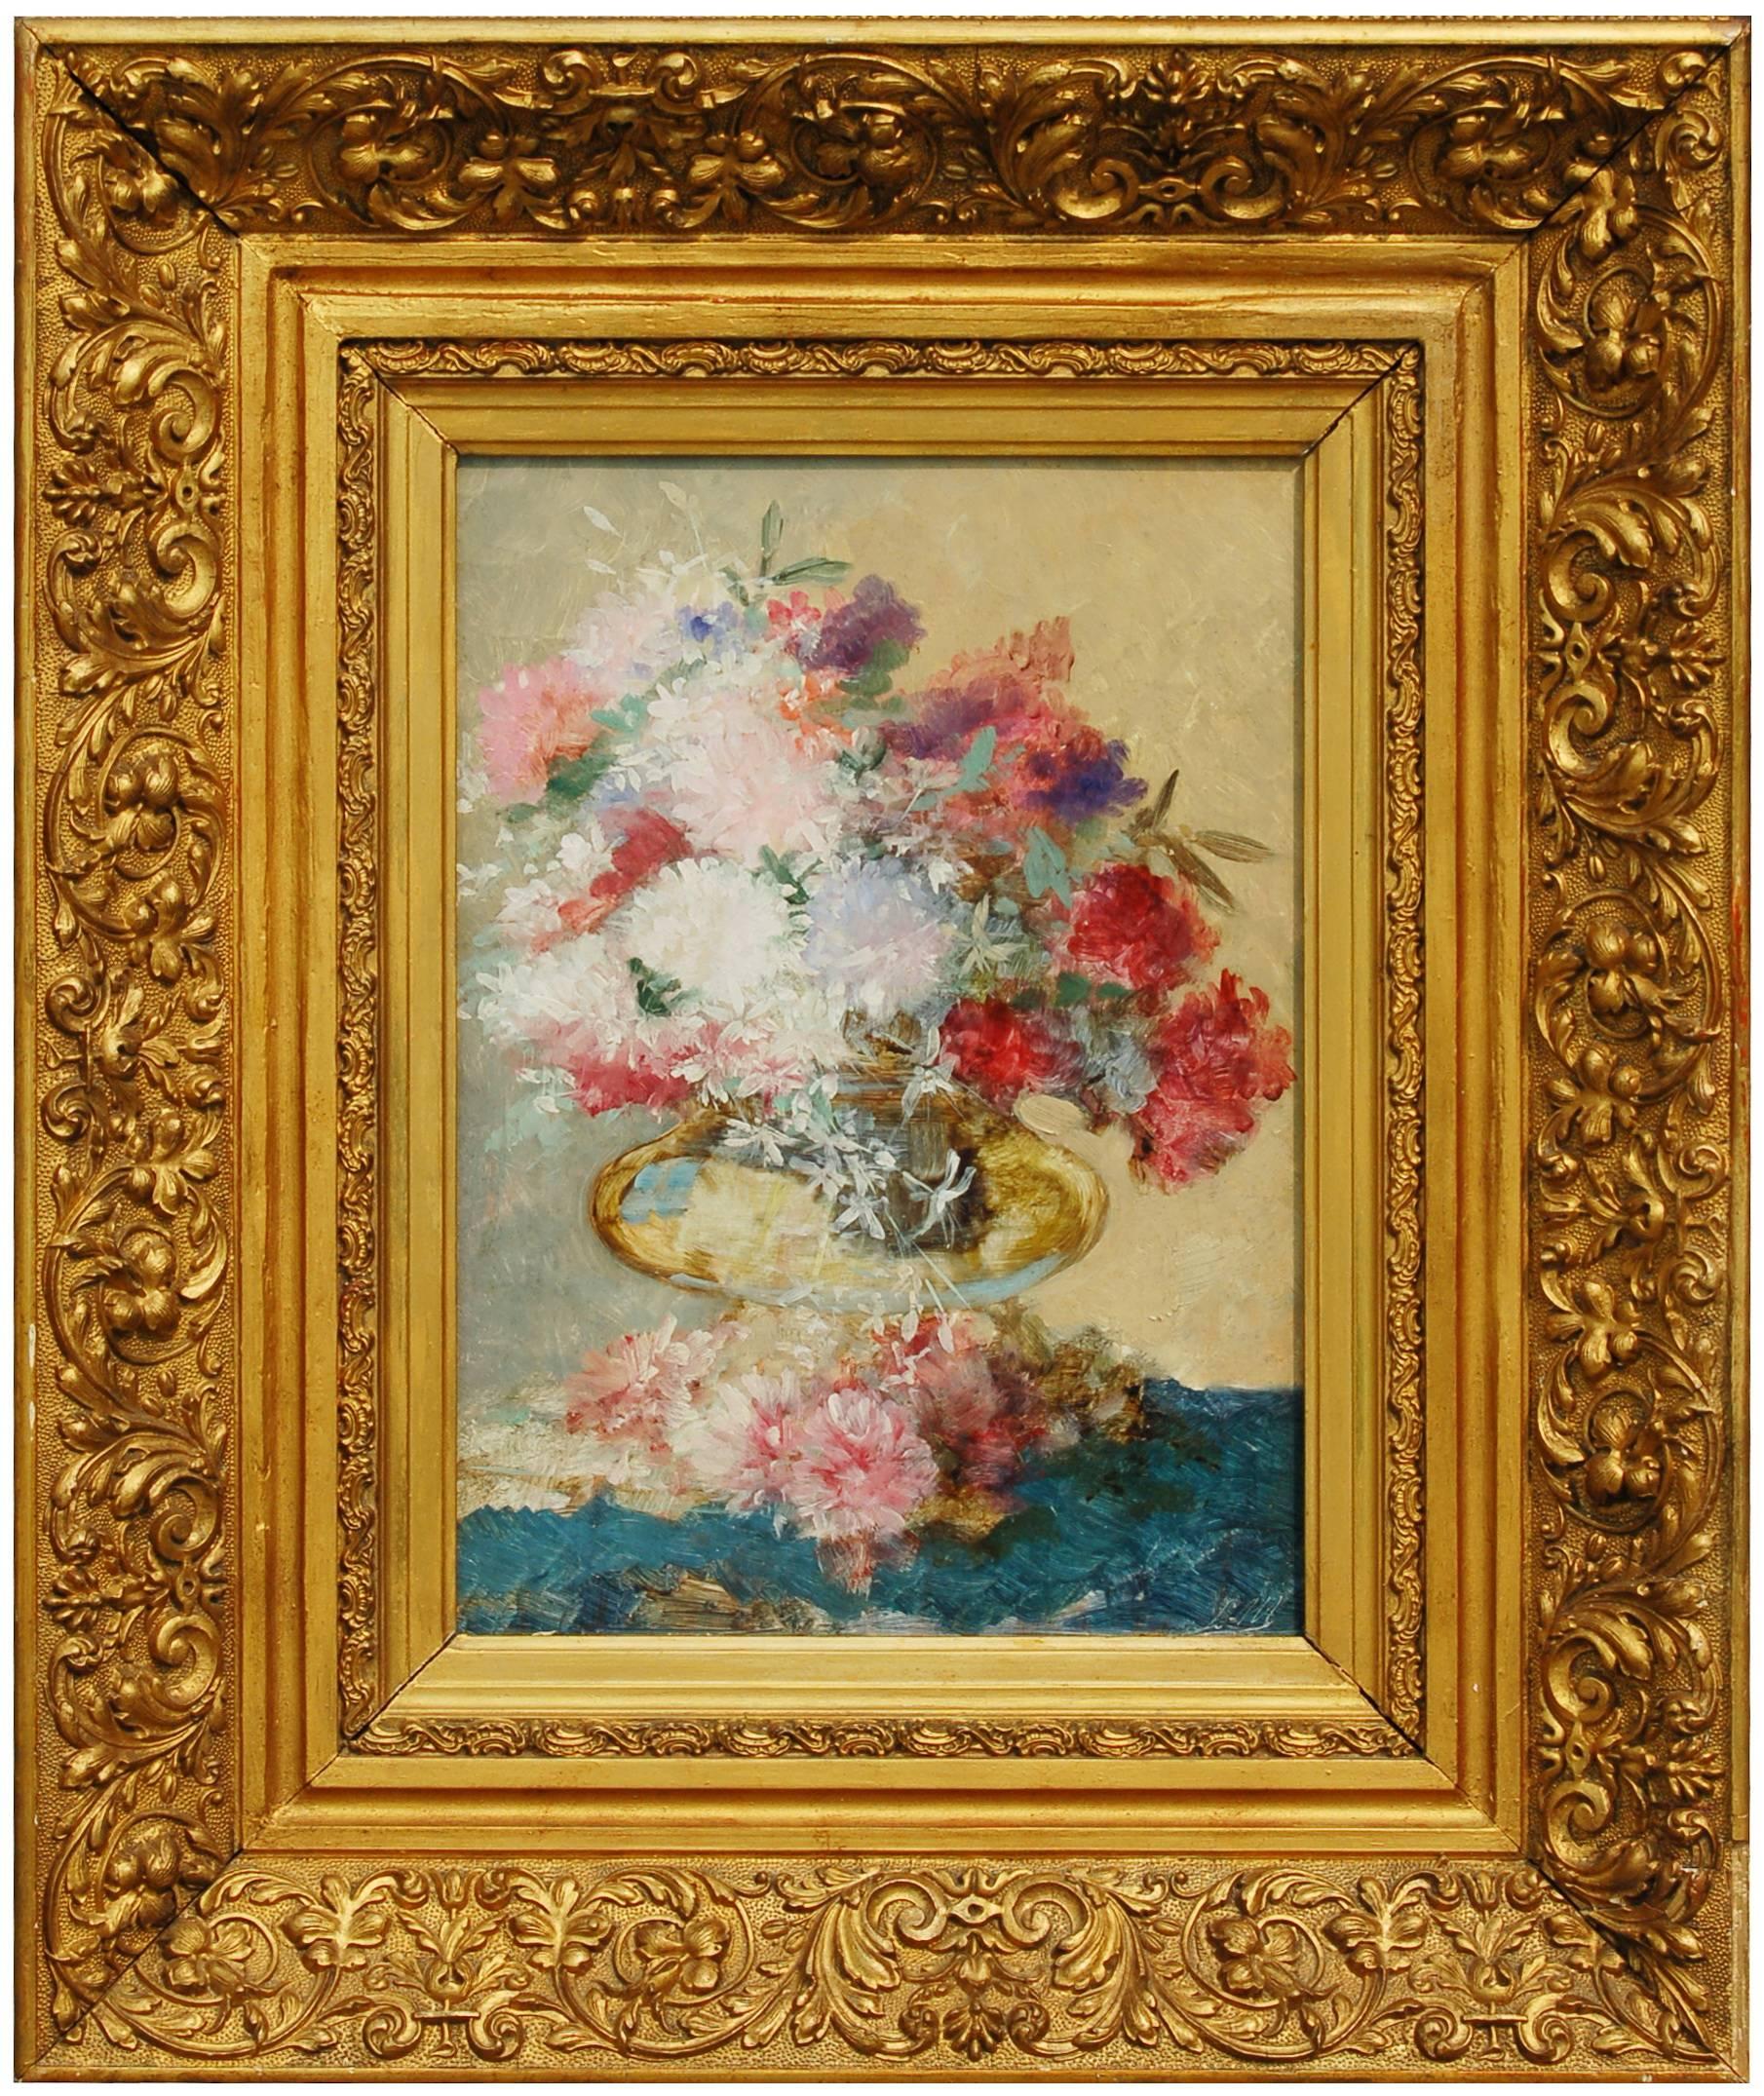 LEONIE MOTTART VAN MARCKE Still-Life Painting - Still Life of Summer Flowers